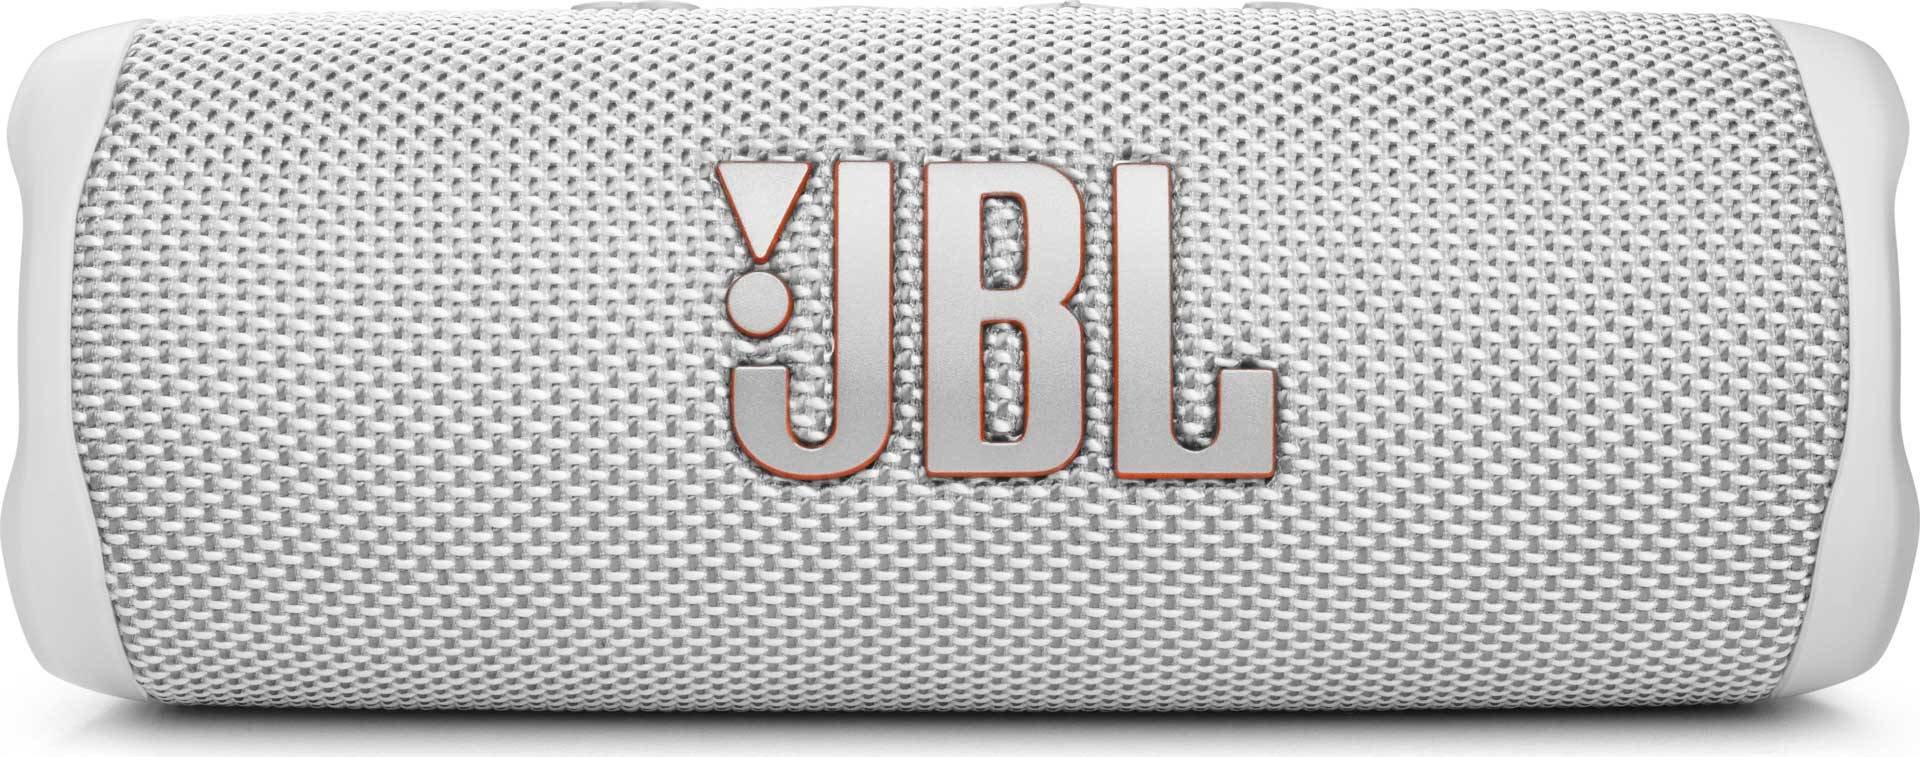 JBL  JBL FLIP 6 Altoparlante portatile stereo Bianco 20 W 